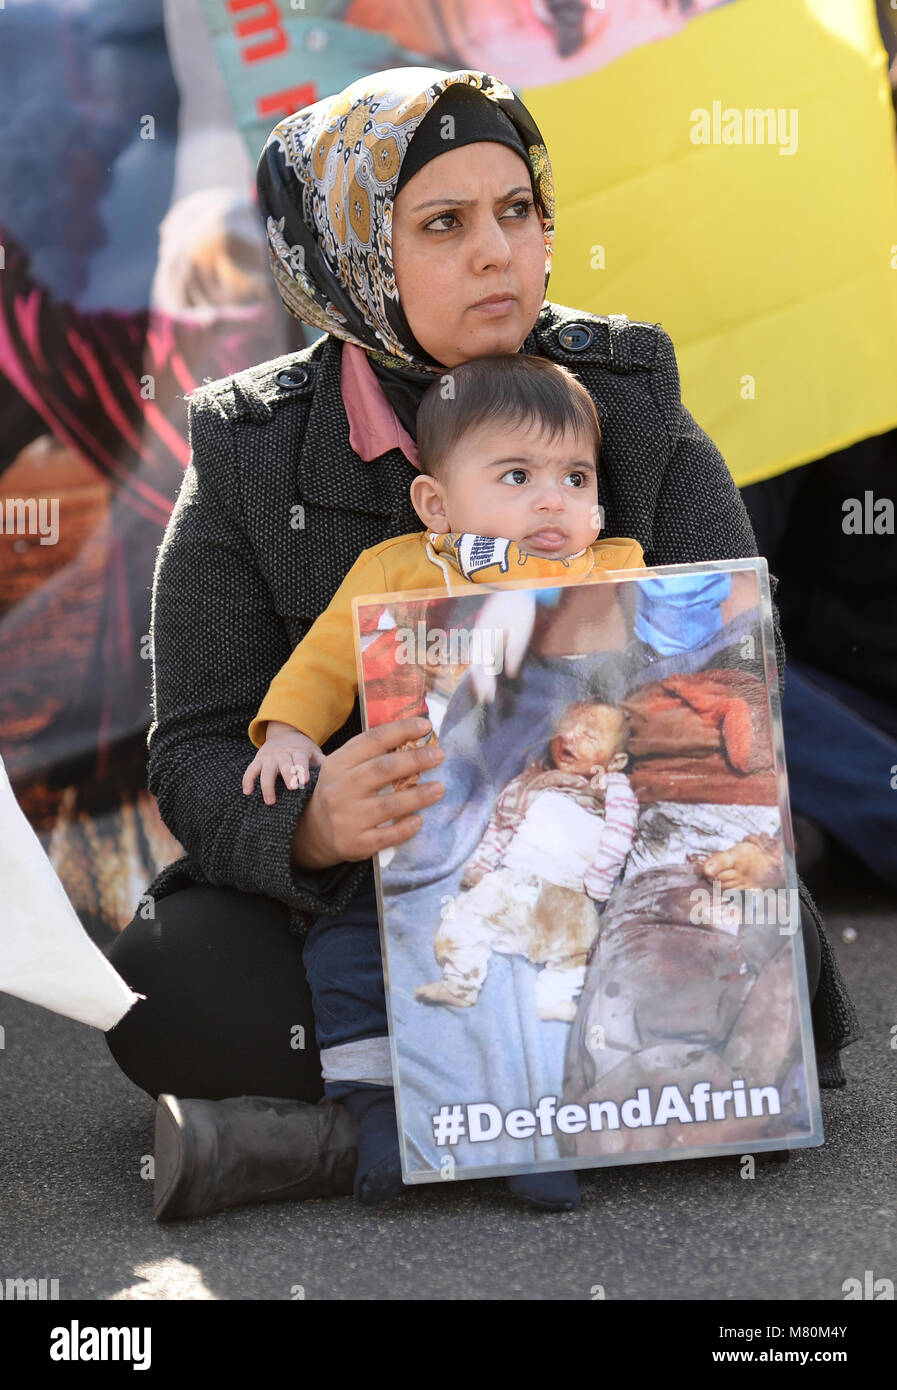 PERMISSION ACCORDÉE manifestants bloquer le trafic à la place du Parlement, Londres, comme ils protestent contre les attaques sur la ville kurde de l'Afrin en Syrie du nord. Banque D'Images